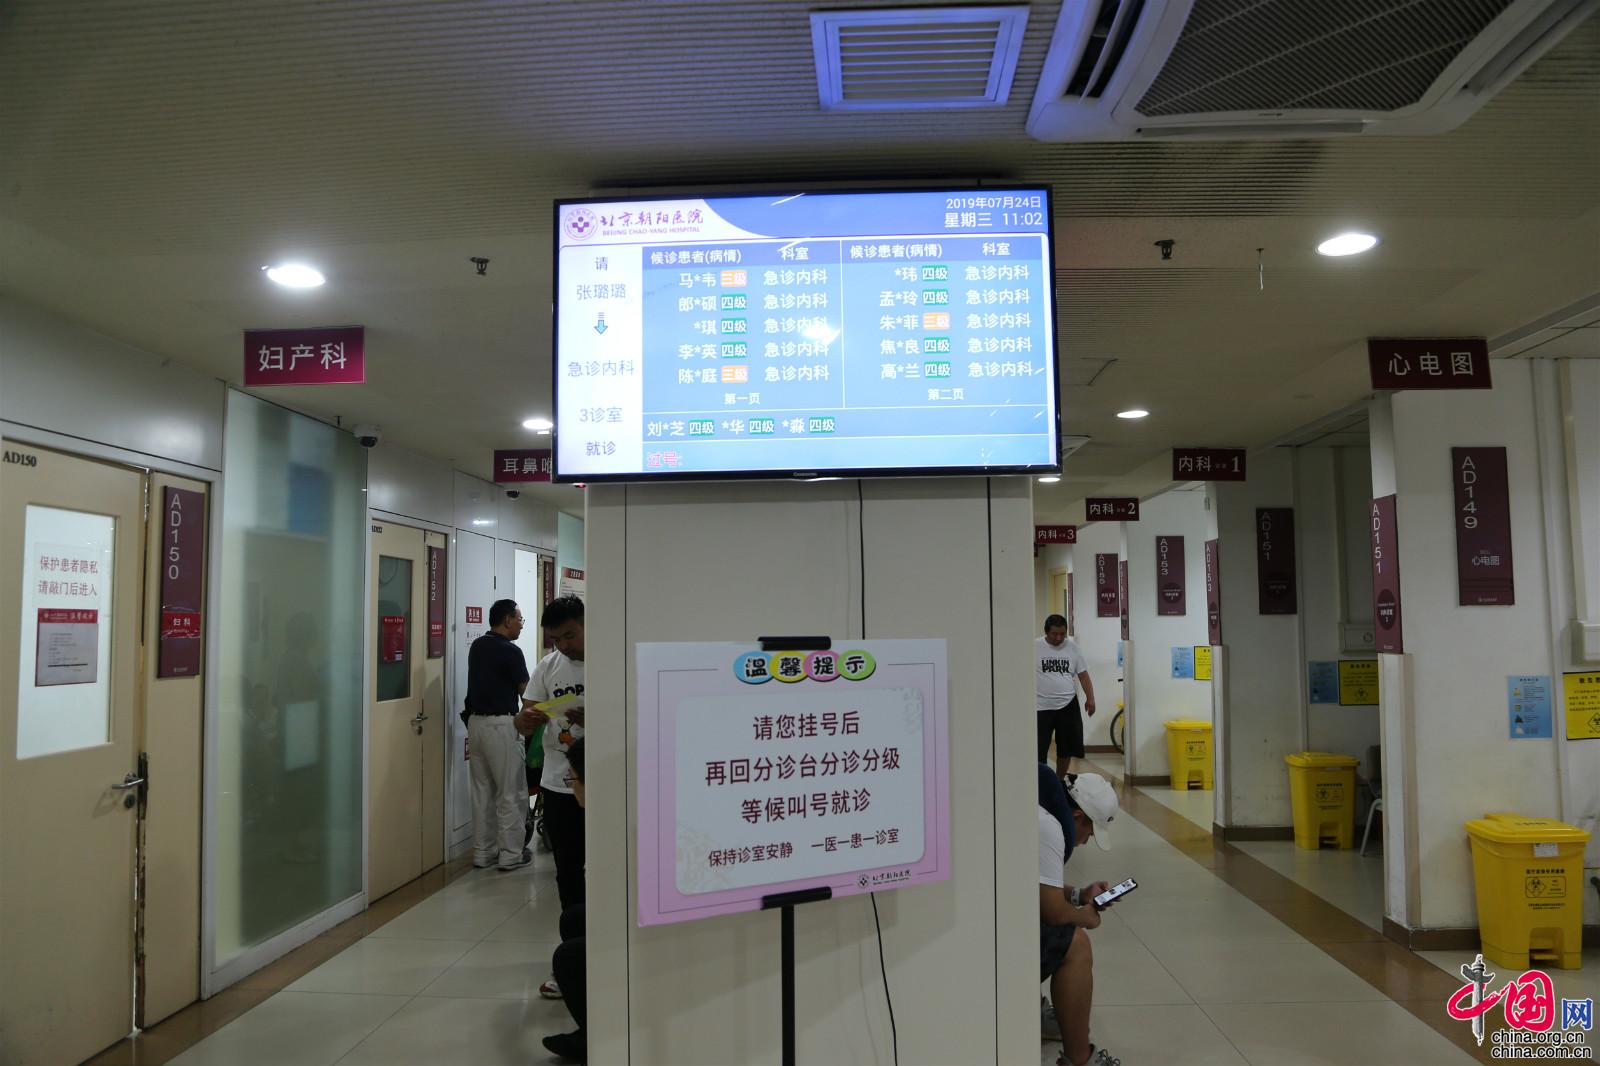 北京市属医院“急诊分级”专题媒体沟通会现场。中国网记者胡俊 摄